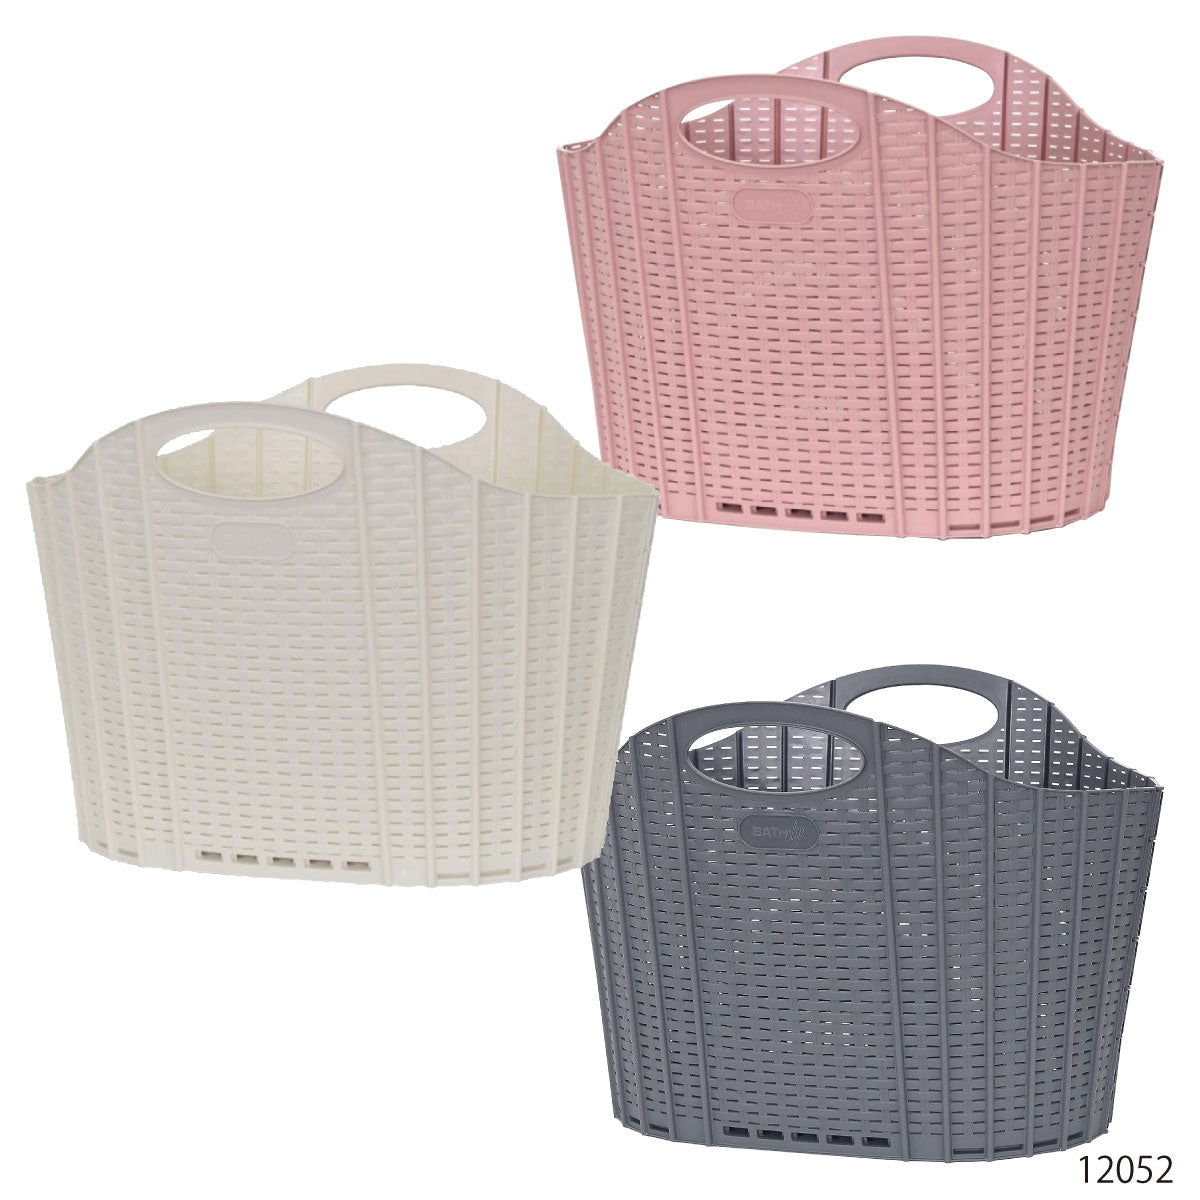 Foldable Laundry Basket Laundry Hamper Slim Laundry Bag Rattan Style Laundry Supplies Stylish